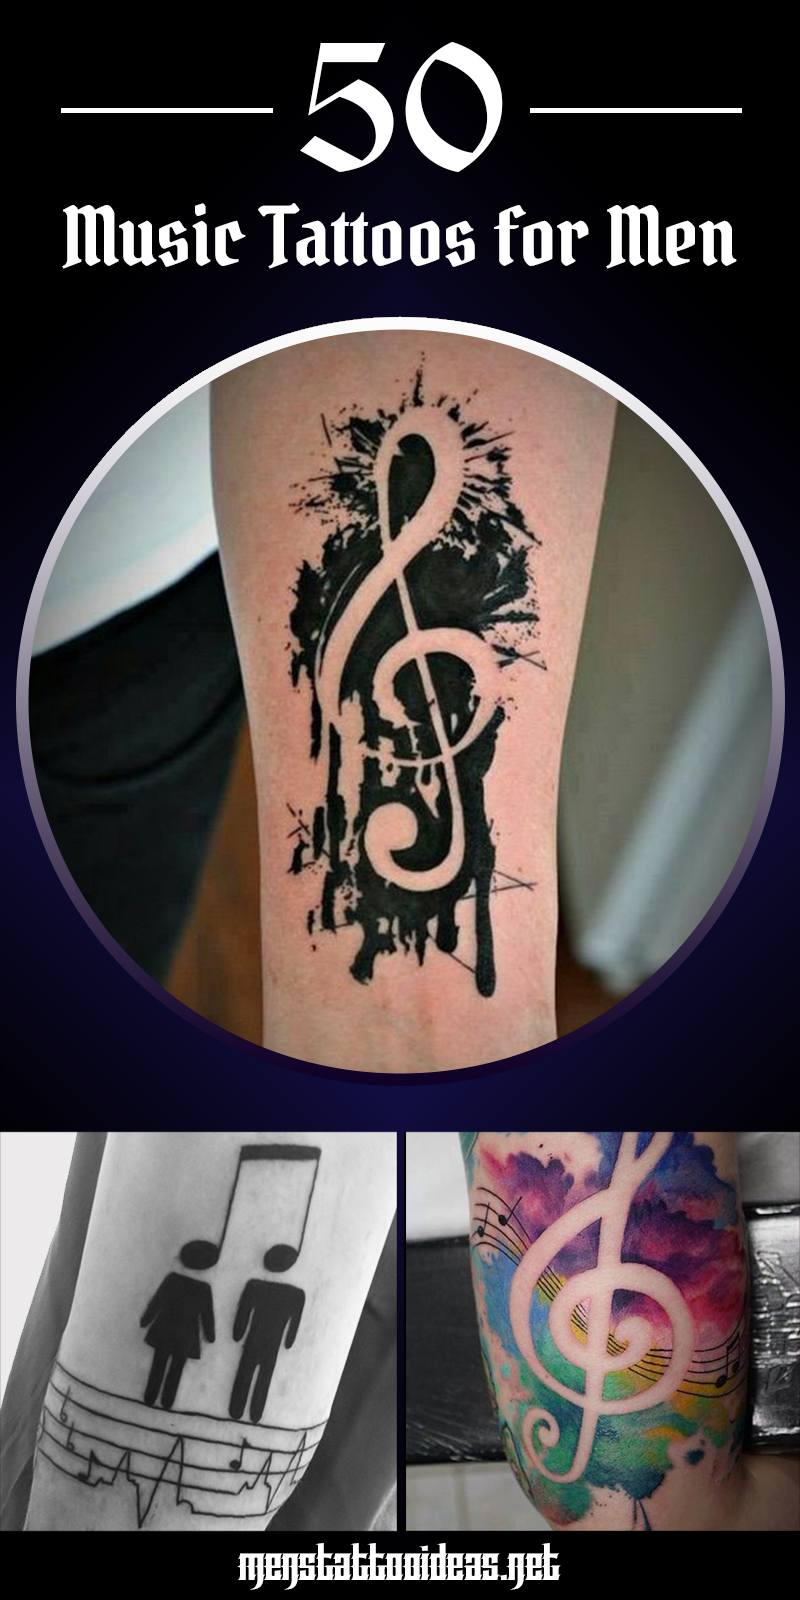 Music tattoo ideas